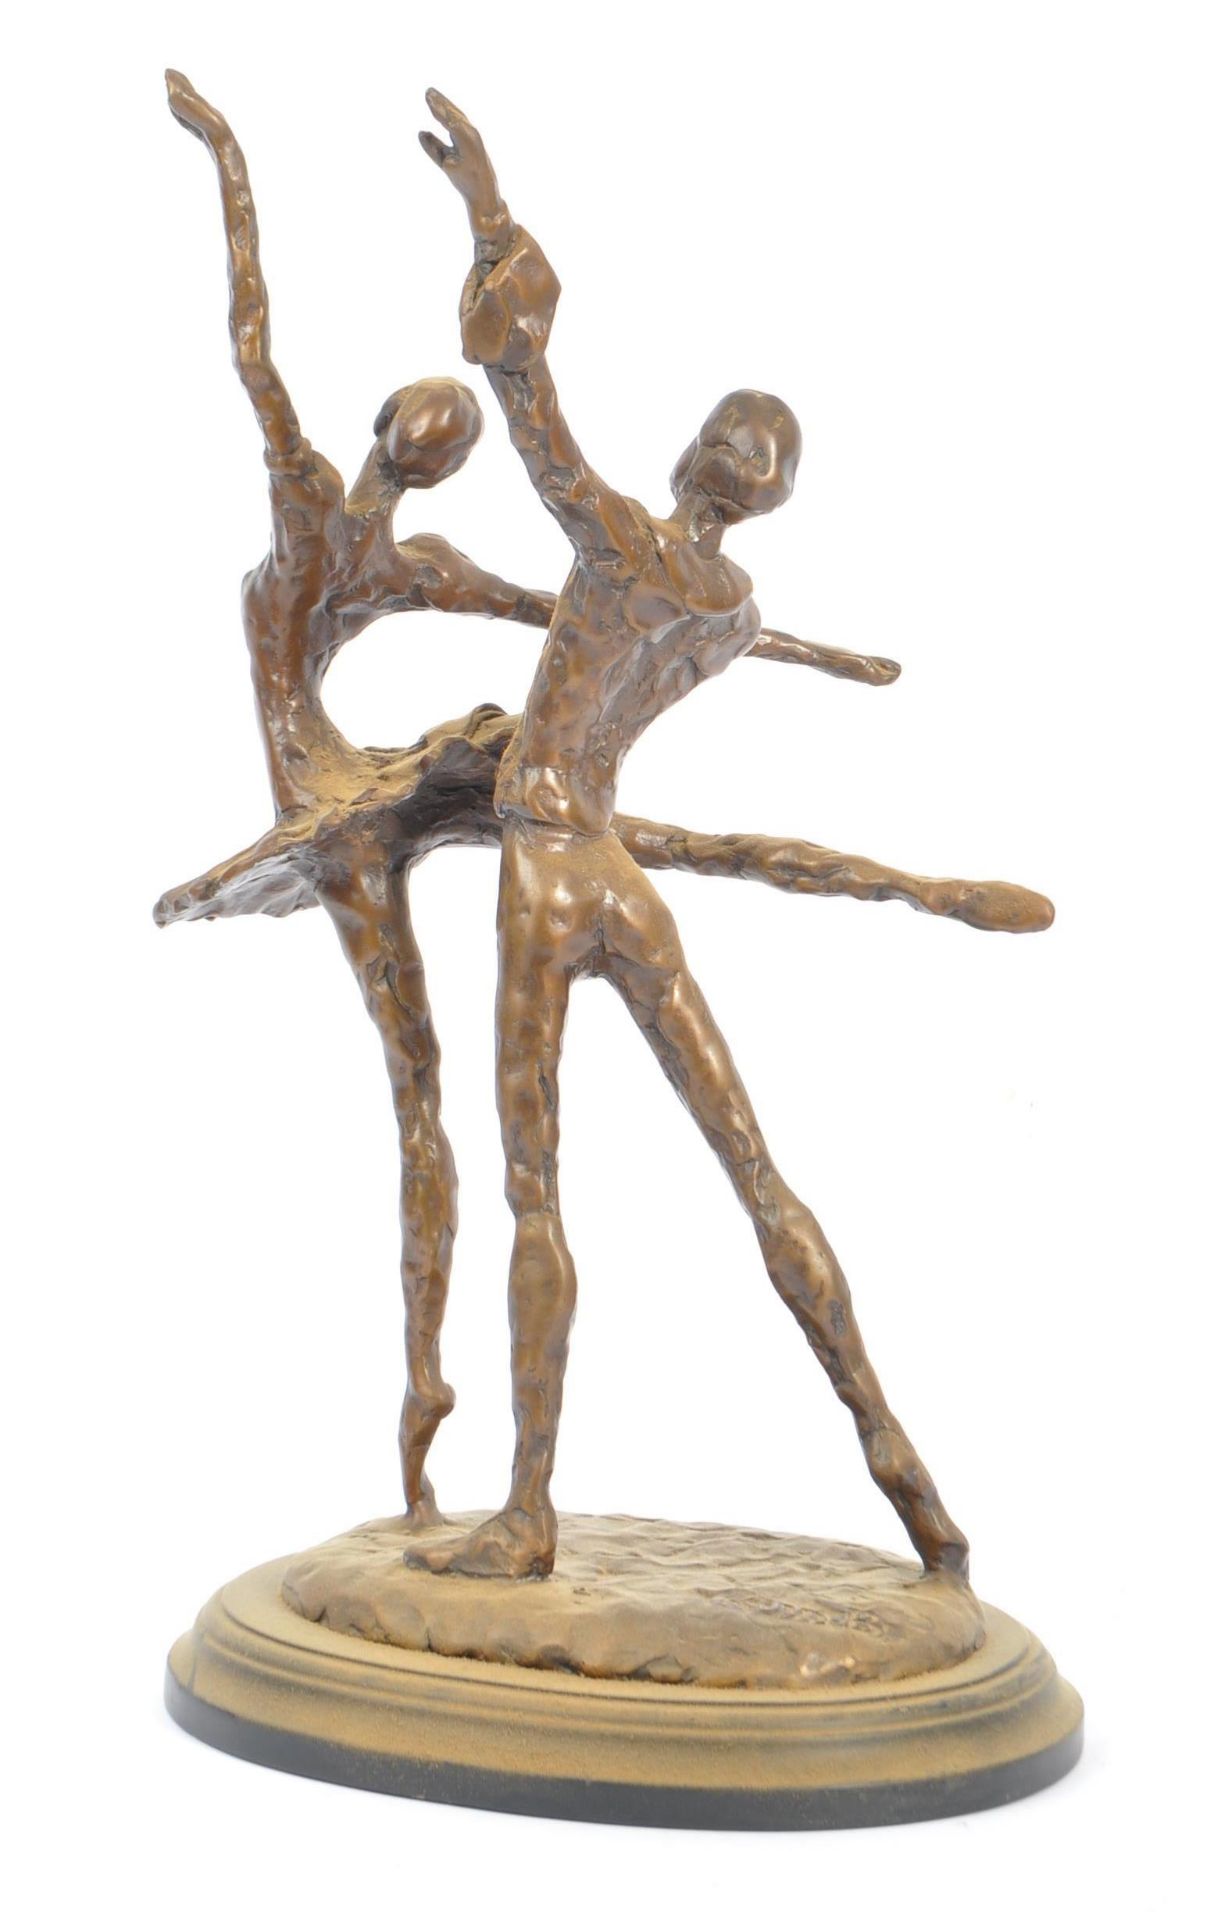 20TH CENTURY BERNARD KIM BRONZE MODERNIST DANCER SCULPTURE - Image 3 of 5